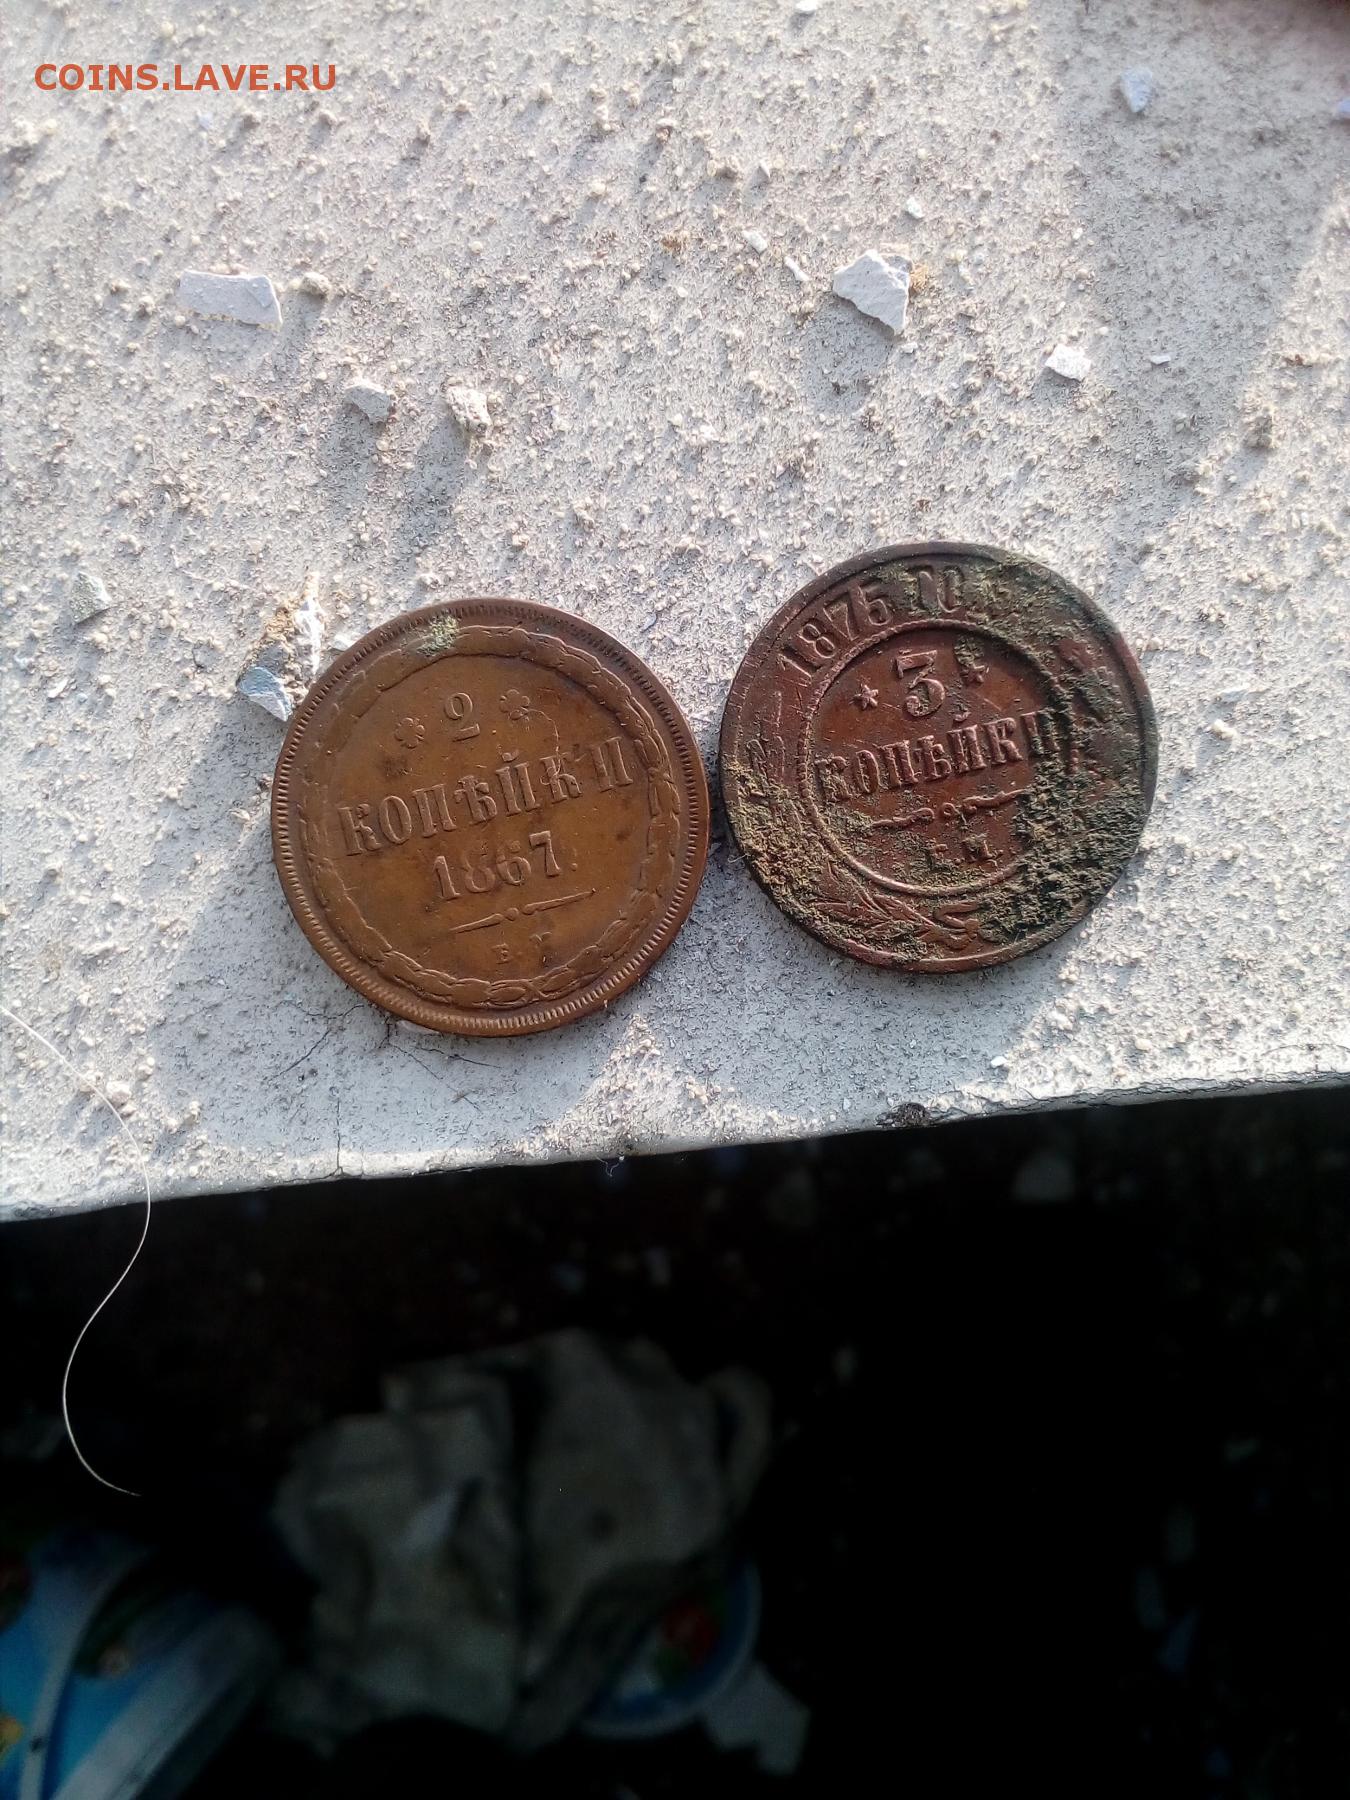 Нашел монеты дома. Можно ли искать монеты в заброшенных домах.